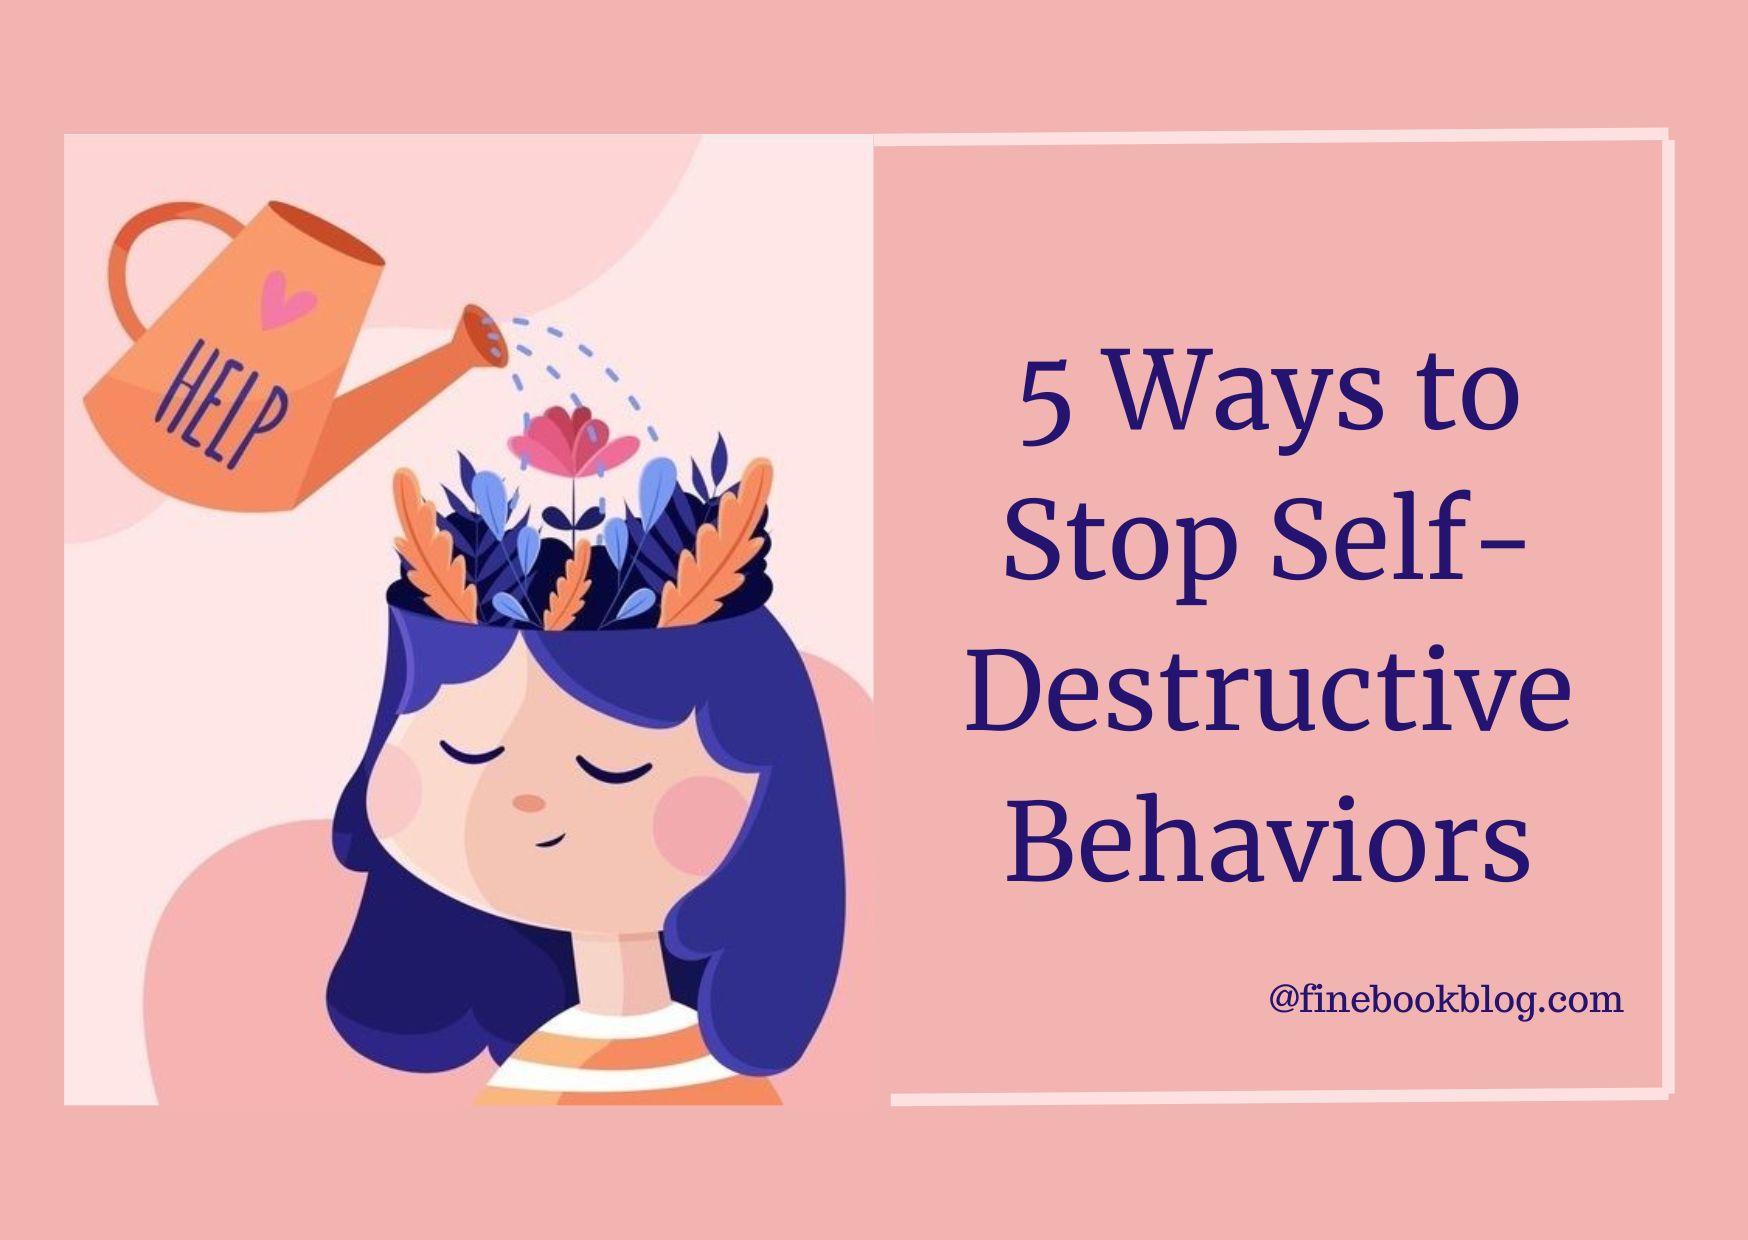 How-to-stop-self-destructive-behaviors-book-recs